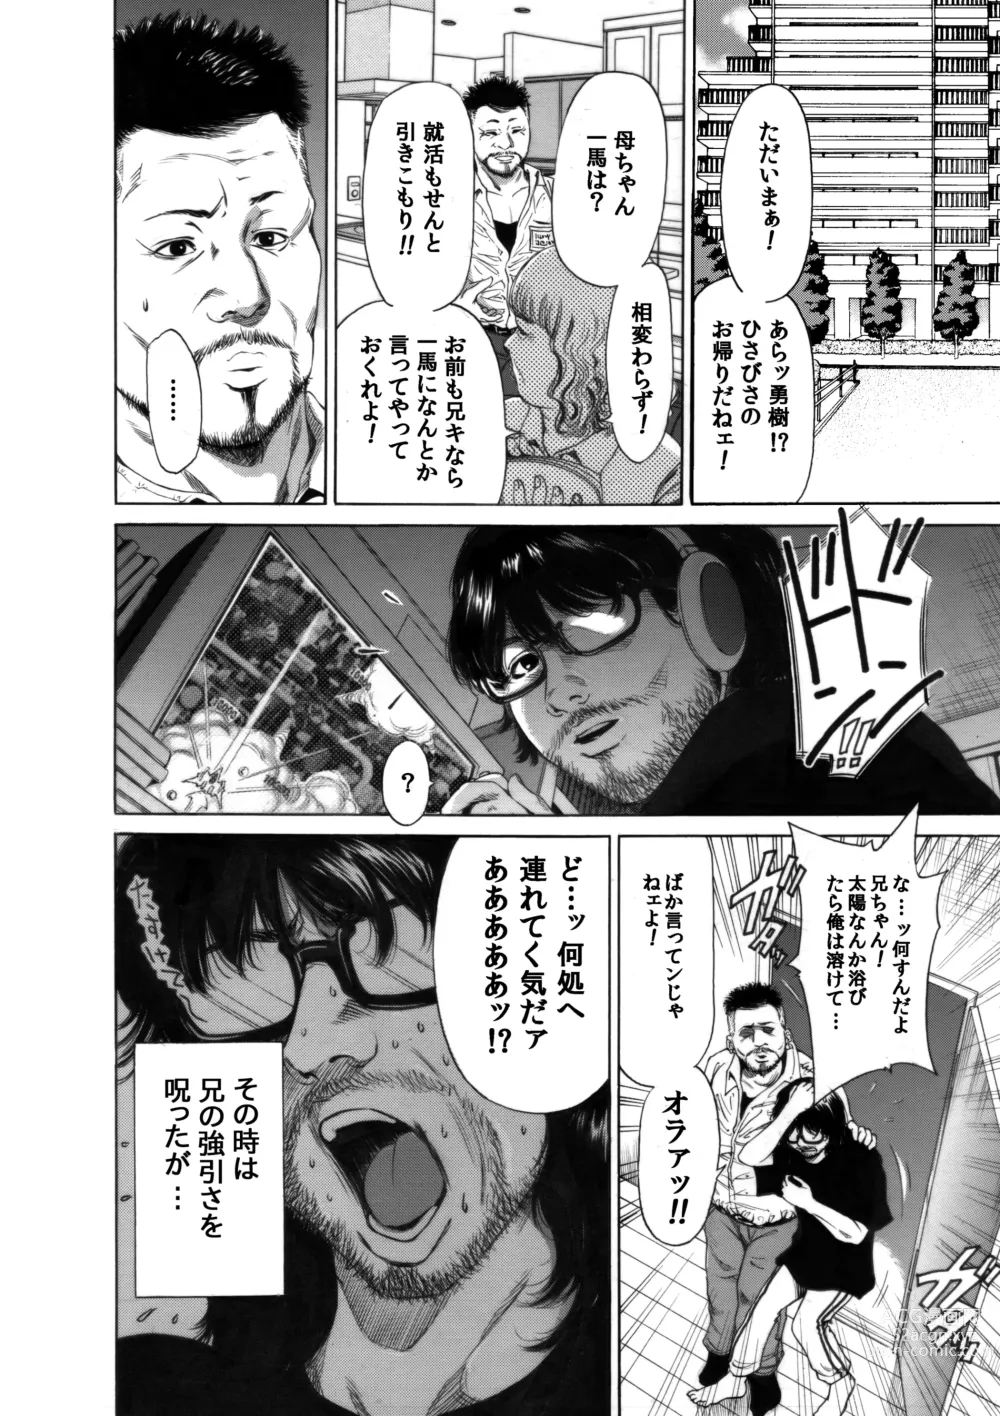 Page 8 of doujinshi Okumori Boy Shoki Ero Manga-shuu “San-biki ga yaru”